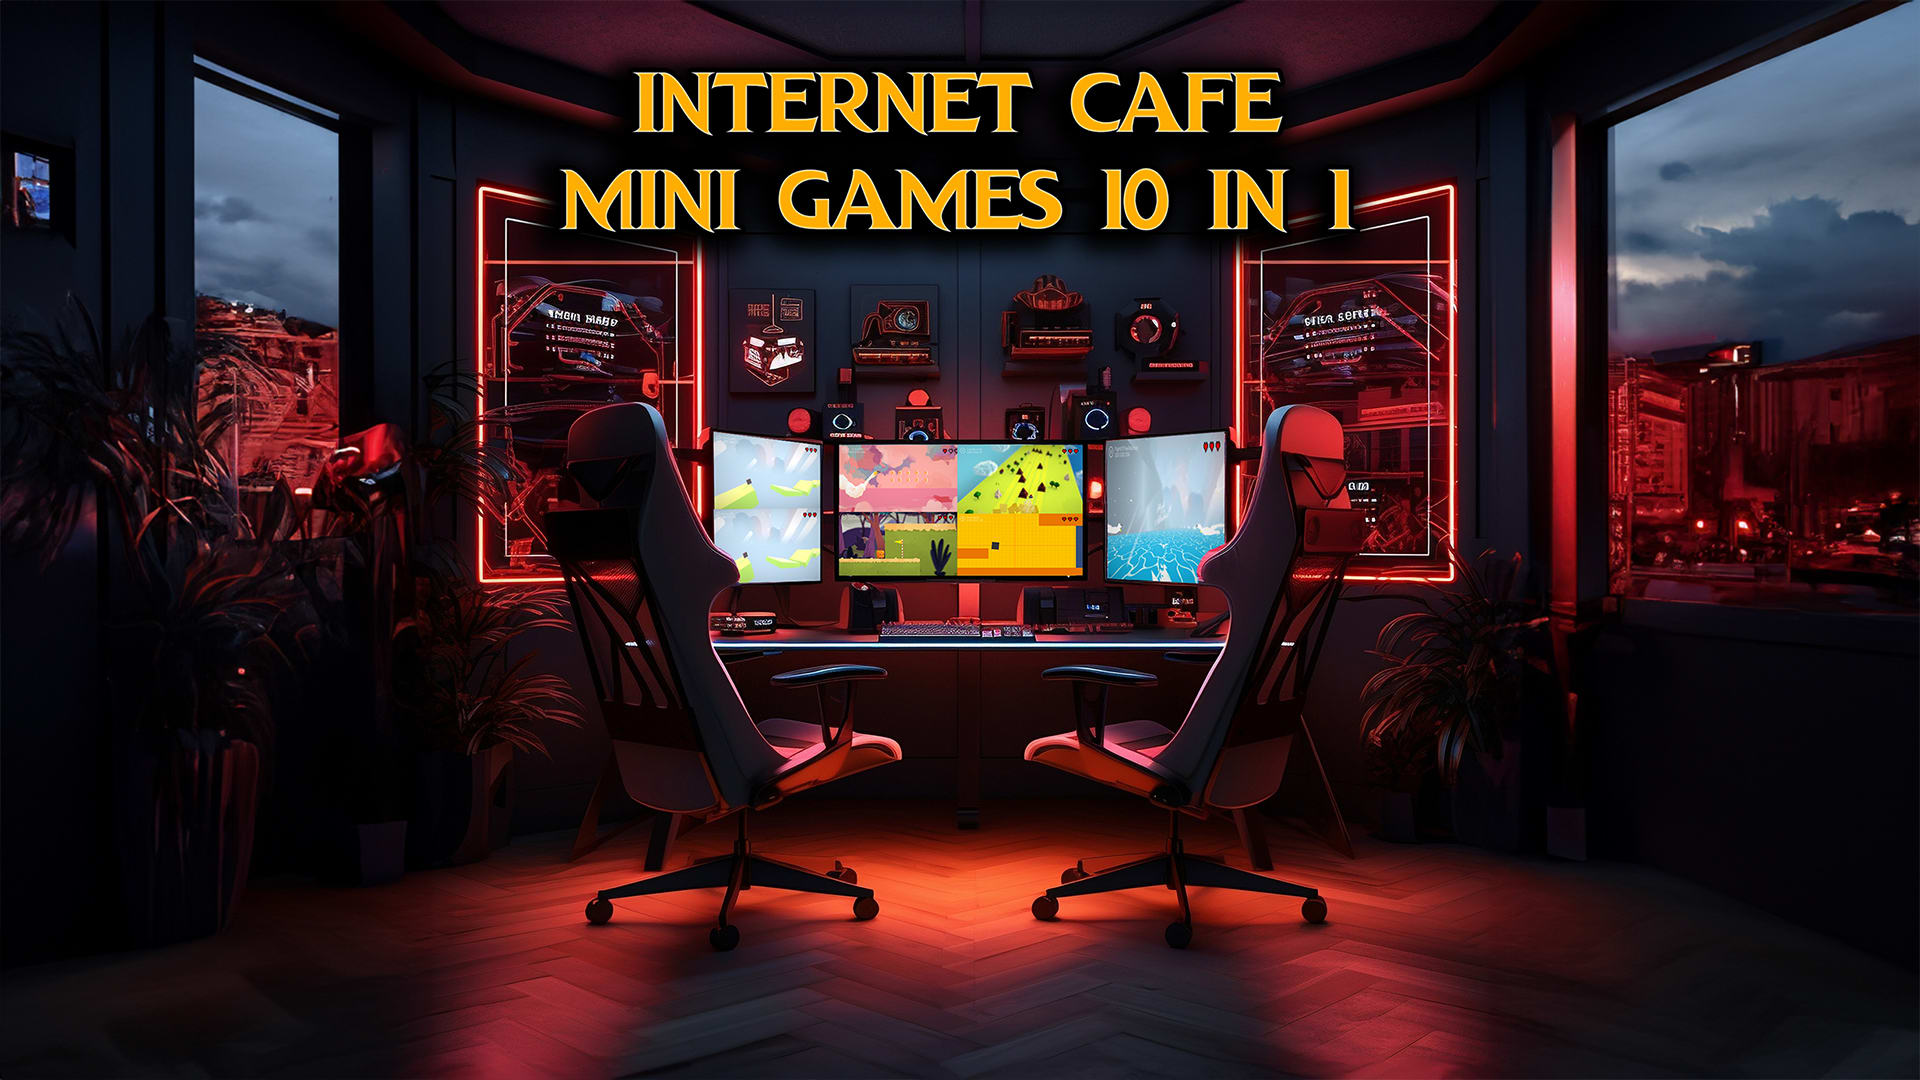 Mini-jeux de café Internet 10 en 1